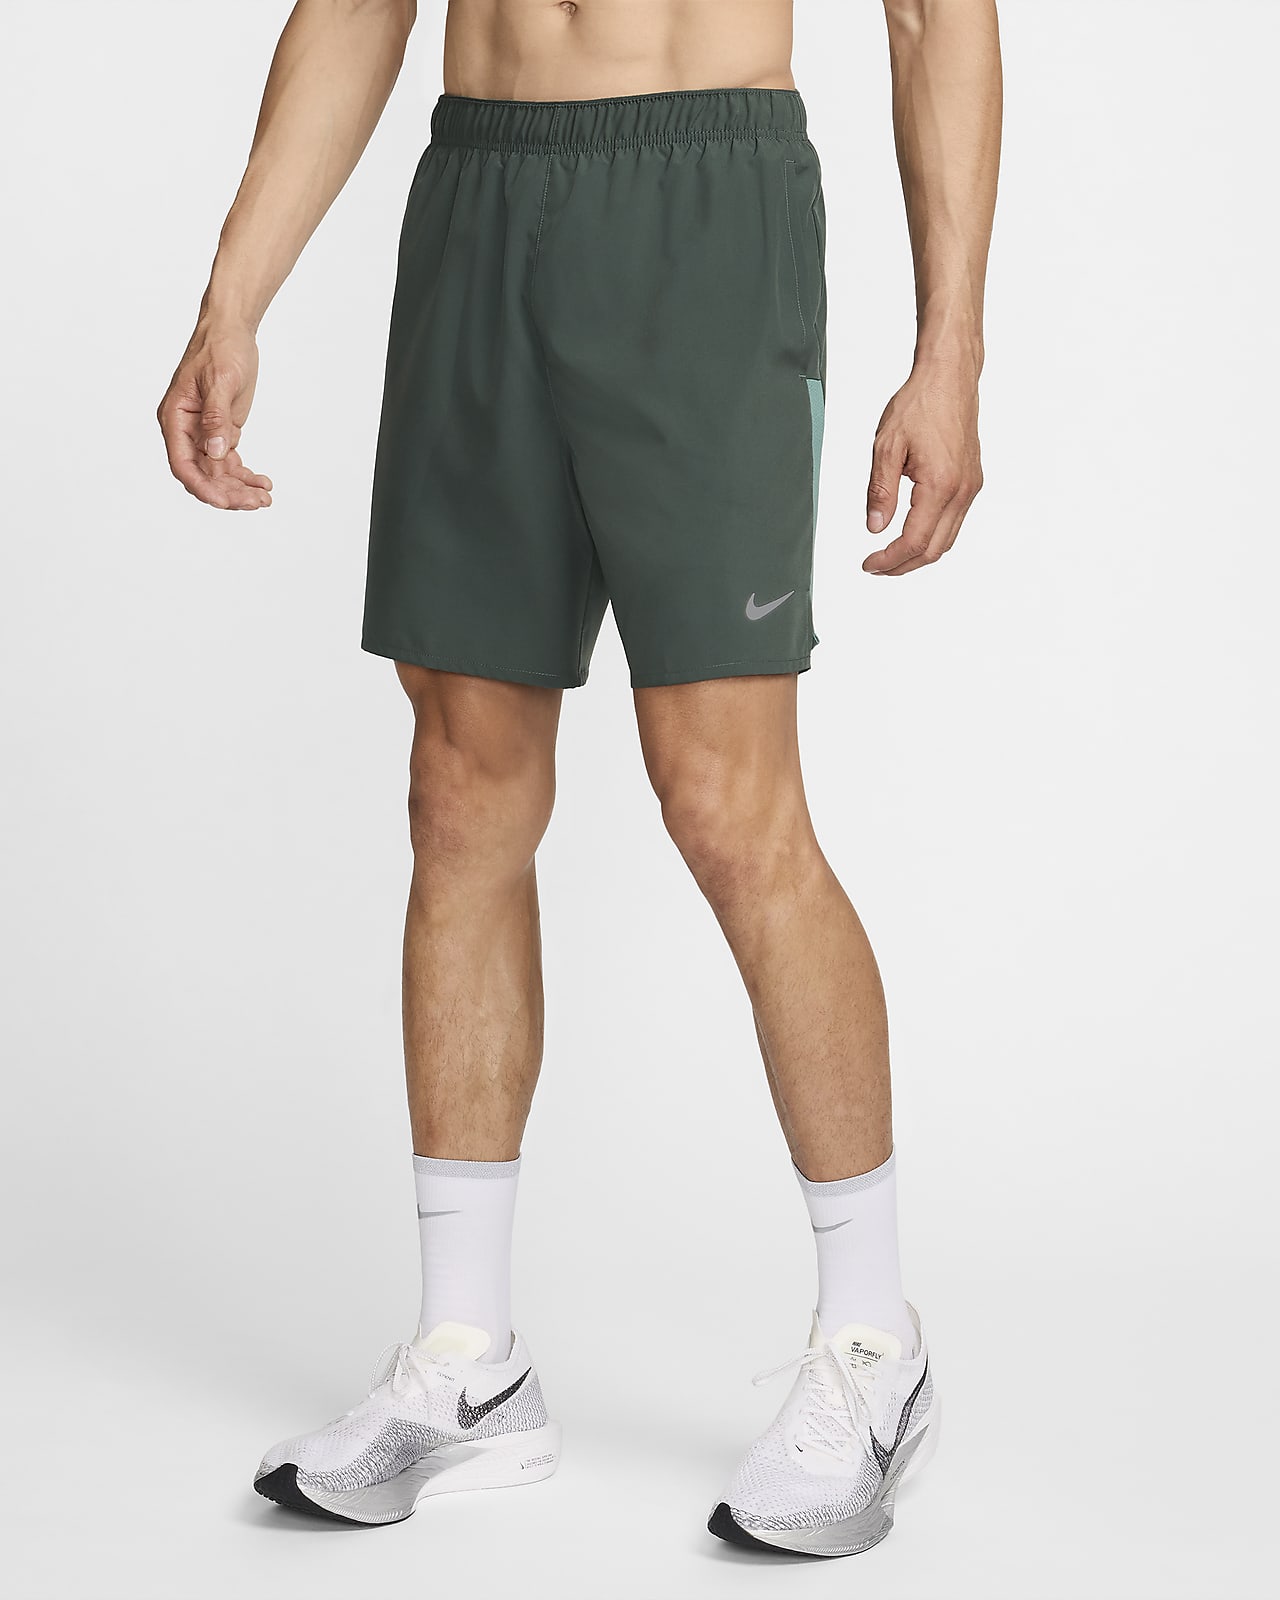 Ανδρικό σορτς για τρέξιμο με επένδυση εσωτερικού σορτς Dri-FIT Nike Challenger 18 cm